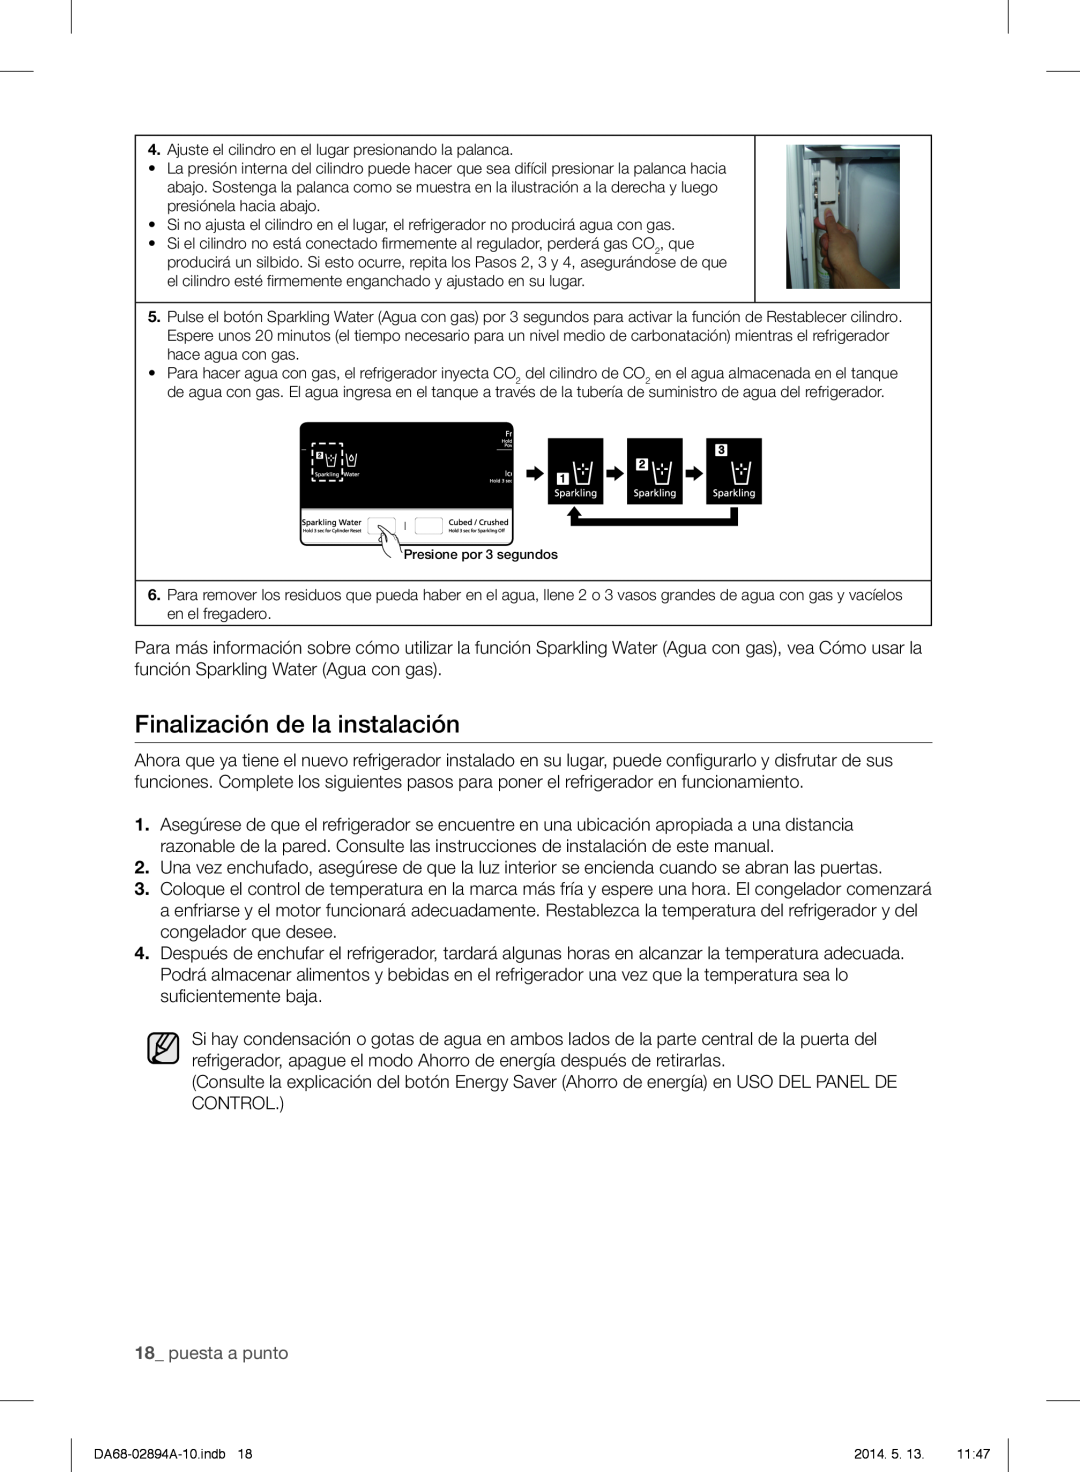 Samsung RF31FMESBSR user manual Finalización de la instalación, 18_ puesta a punto 